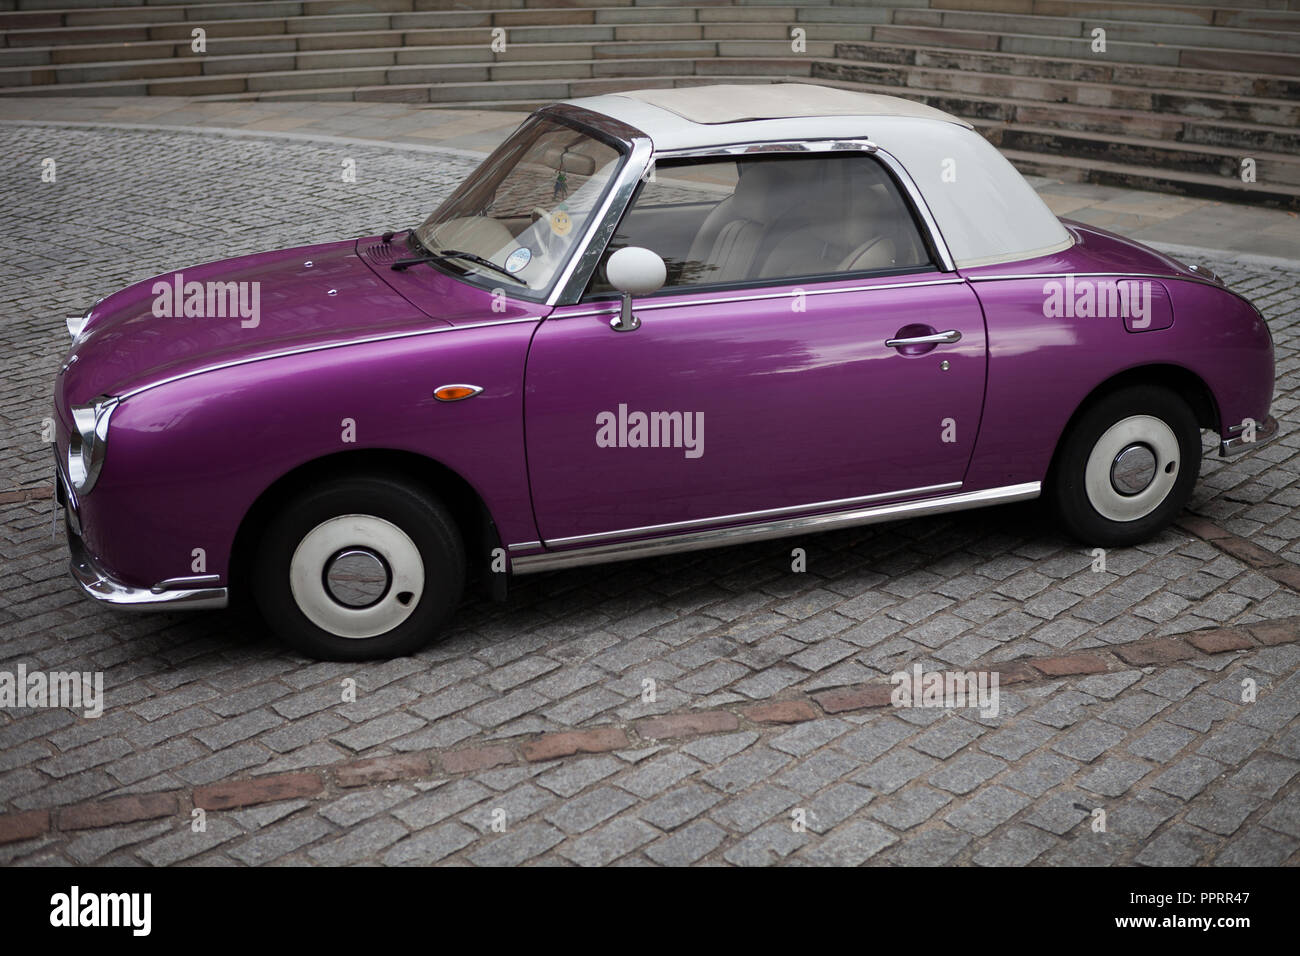 Purple Nissan Figaro parked on cobblestones. Stock Photo